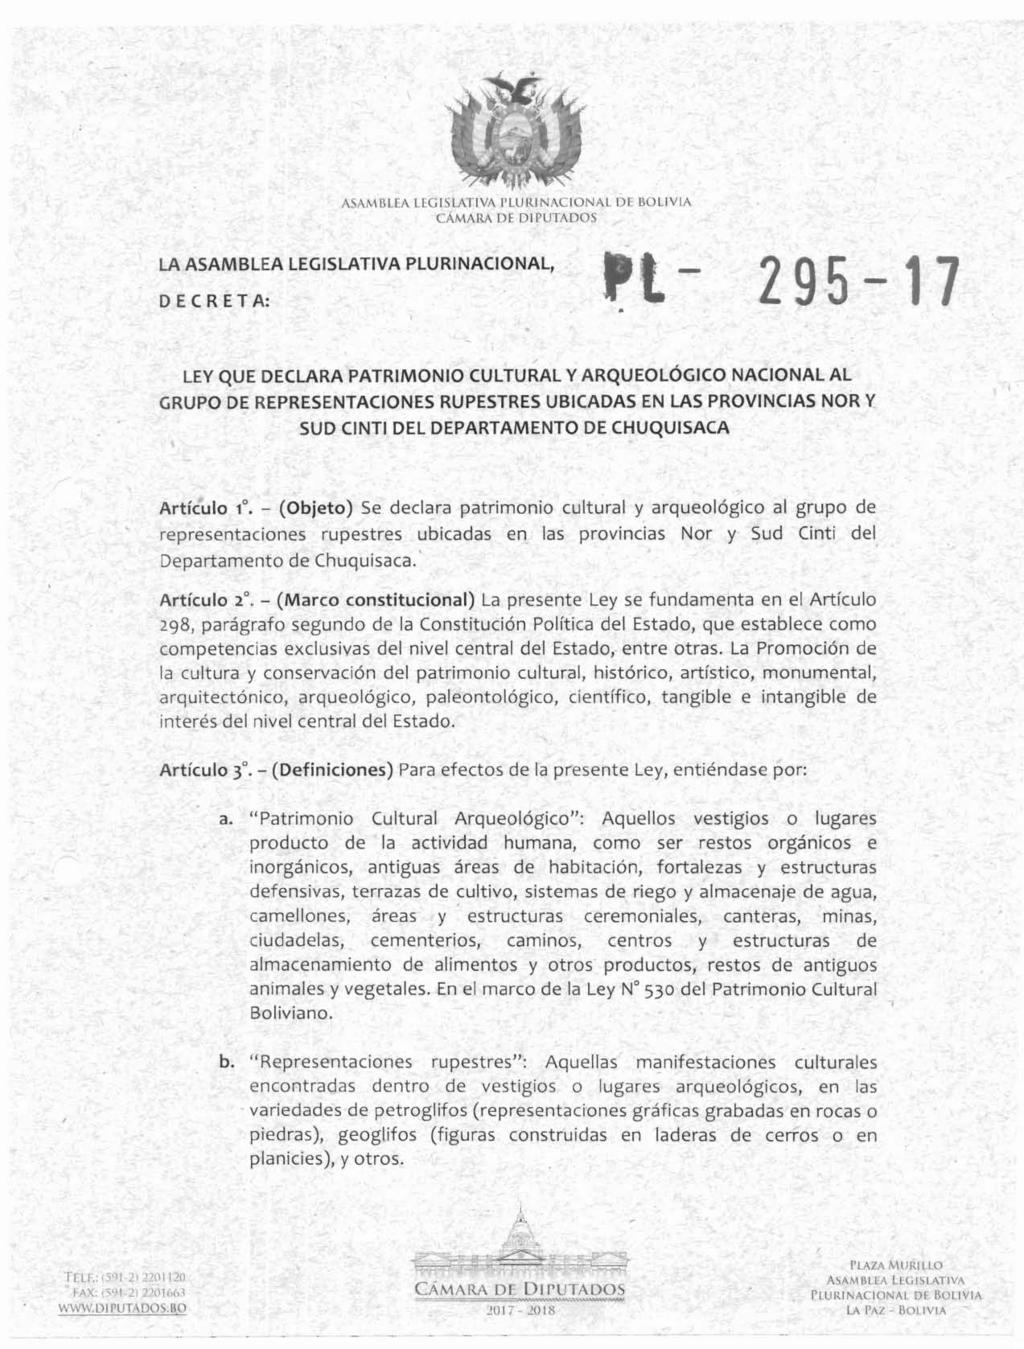 ASAMBLEA LEGISLATIVA PLURINACIONAL DE BOLIVIA LA ASAMBLEA LEGISLATIVA PLURINACIONAL - 295-'7 DECRETA: '1 LEY QUE DECLARA PATRIMONIO CULTURAL Y ARQUEOL~GICO NACIONAL AL GRUPO DE REPRESENTACIONES